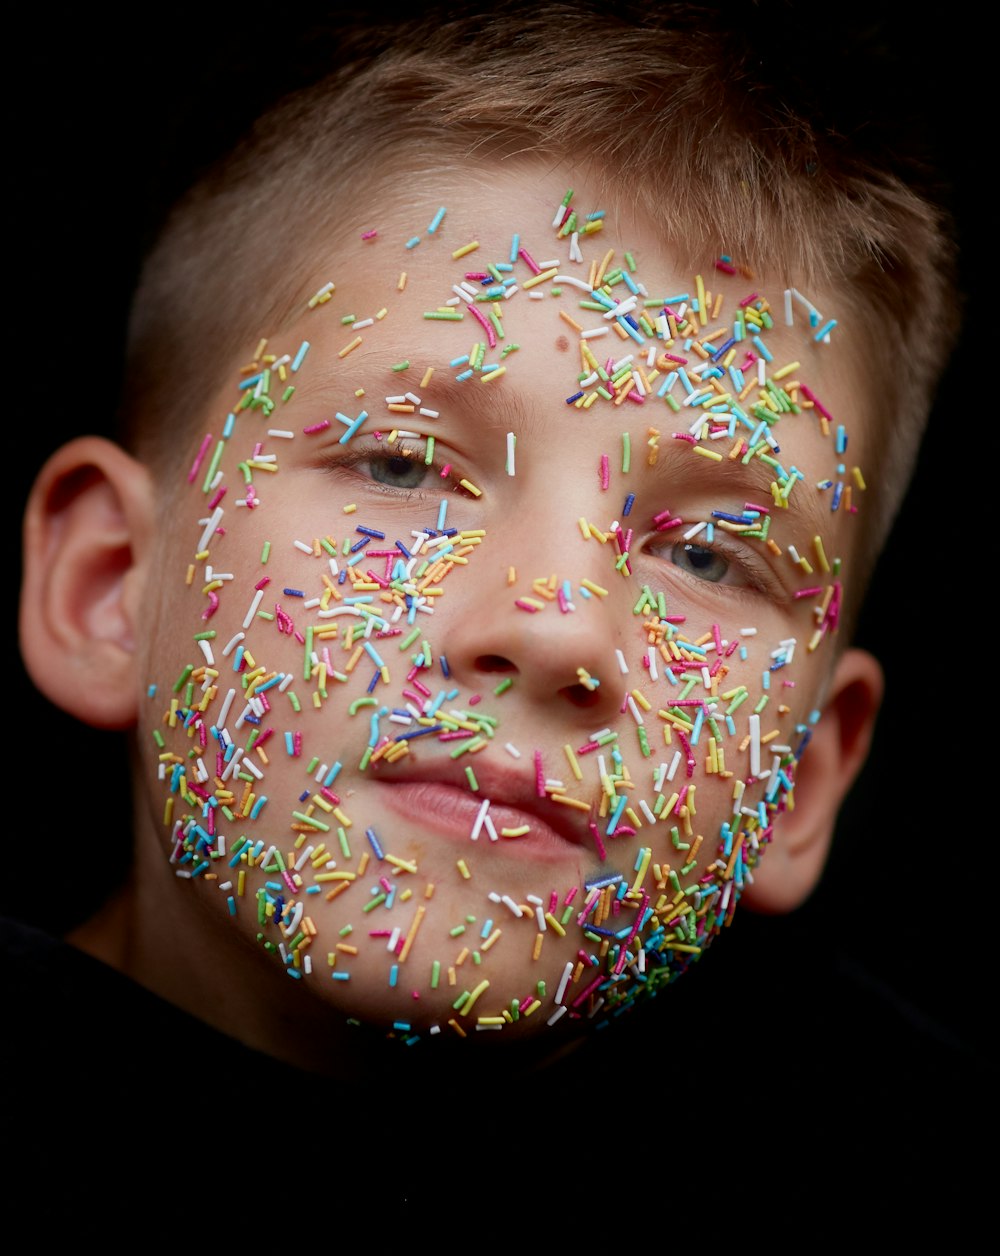 caramelle dell'irrigatore di colori assortiti sul viso del ragazzo